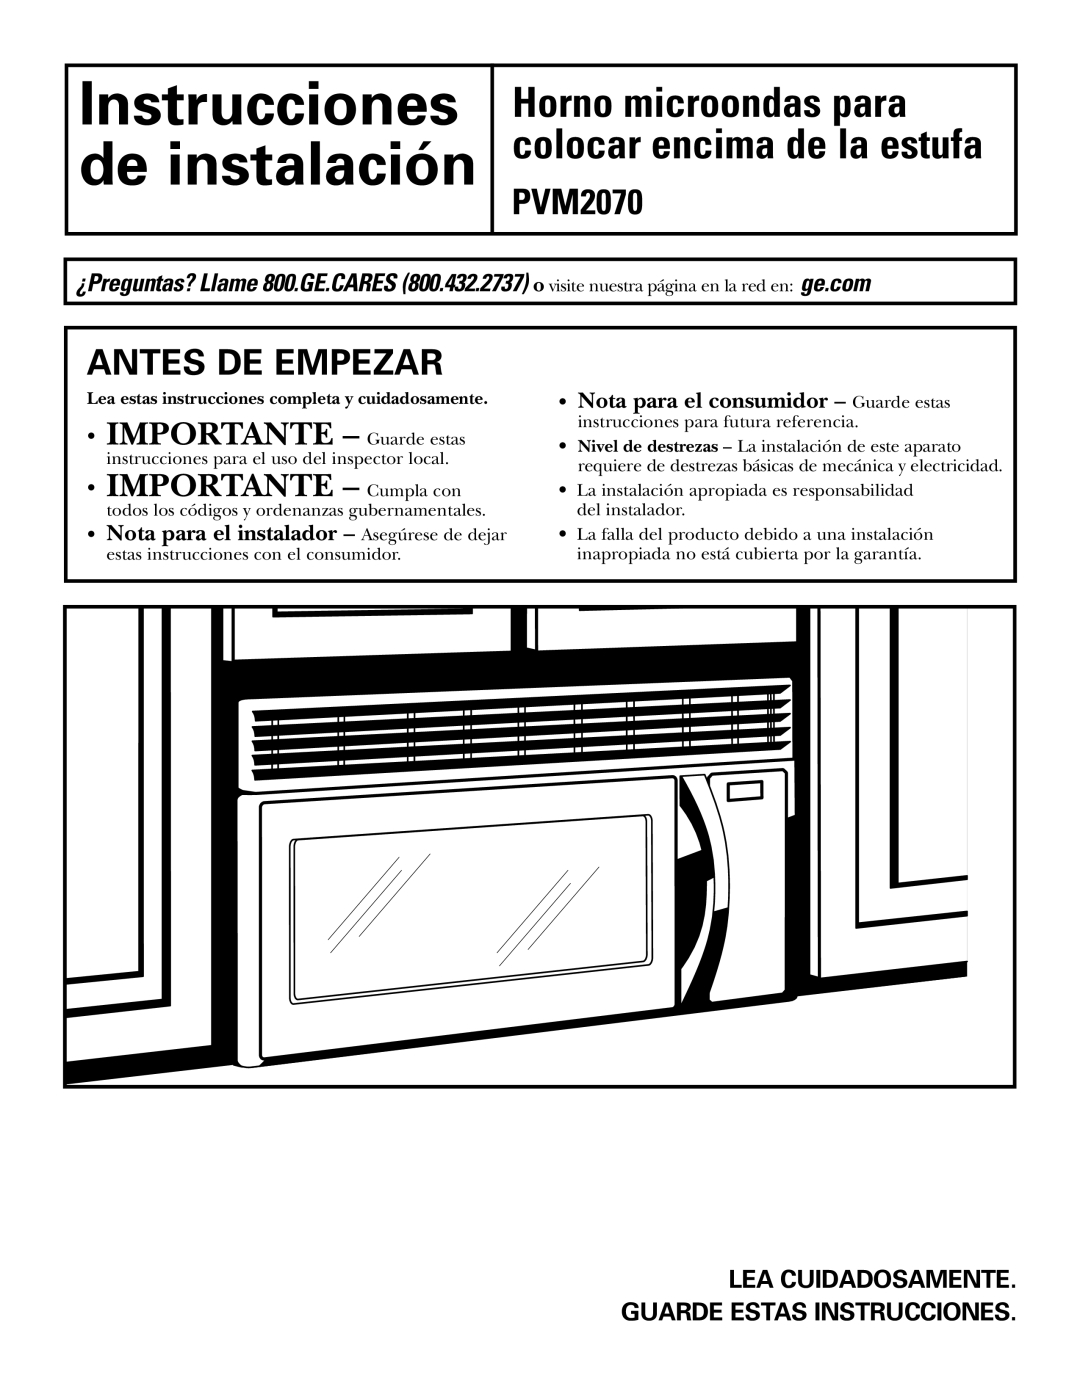 GE PVM2070 warranty Instrucciones de instalación, Horno microondas para colocar encima de la estufa, Antes De Empezar 